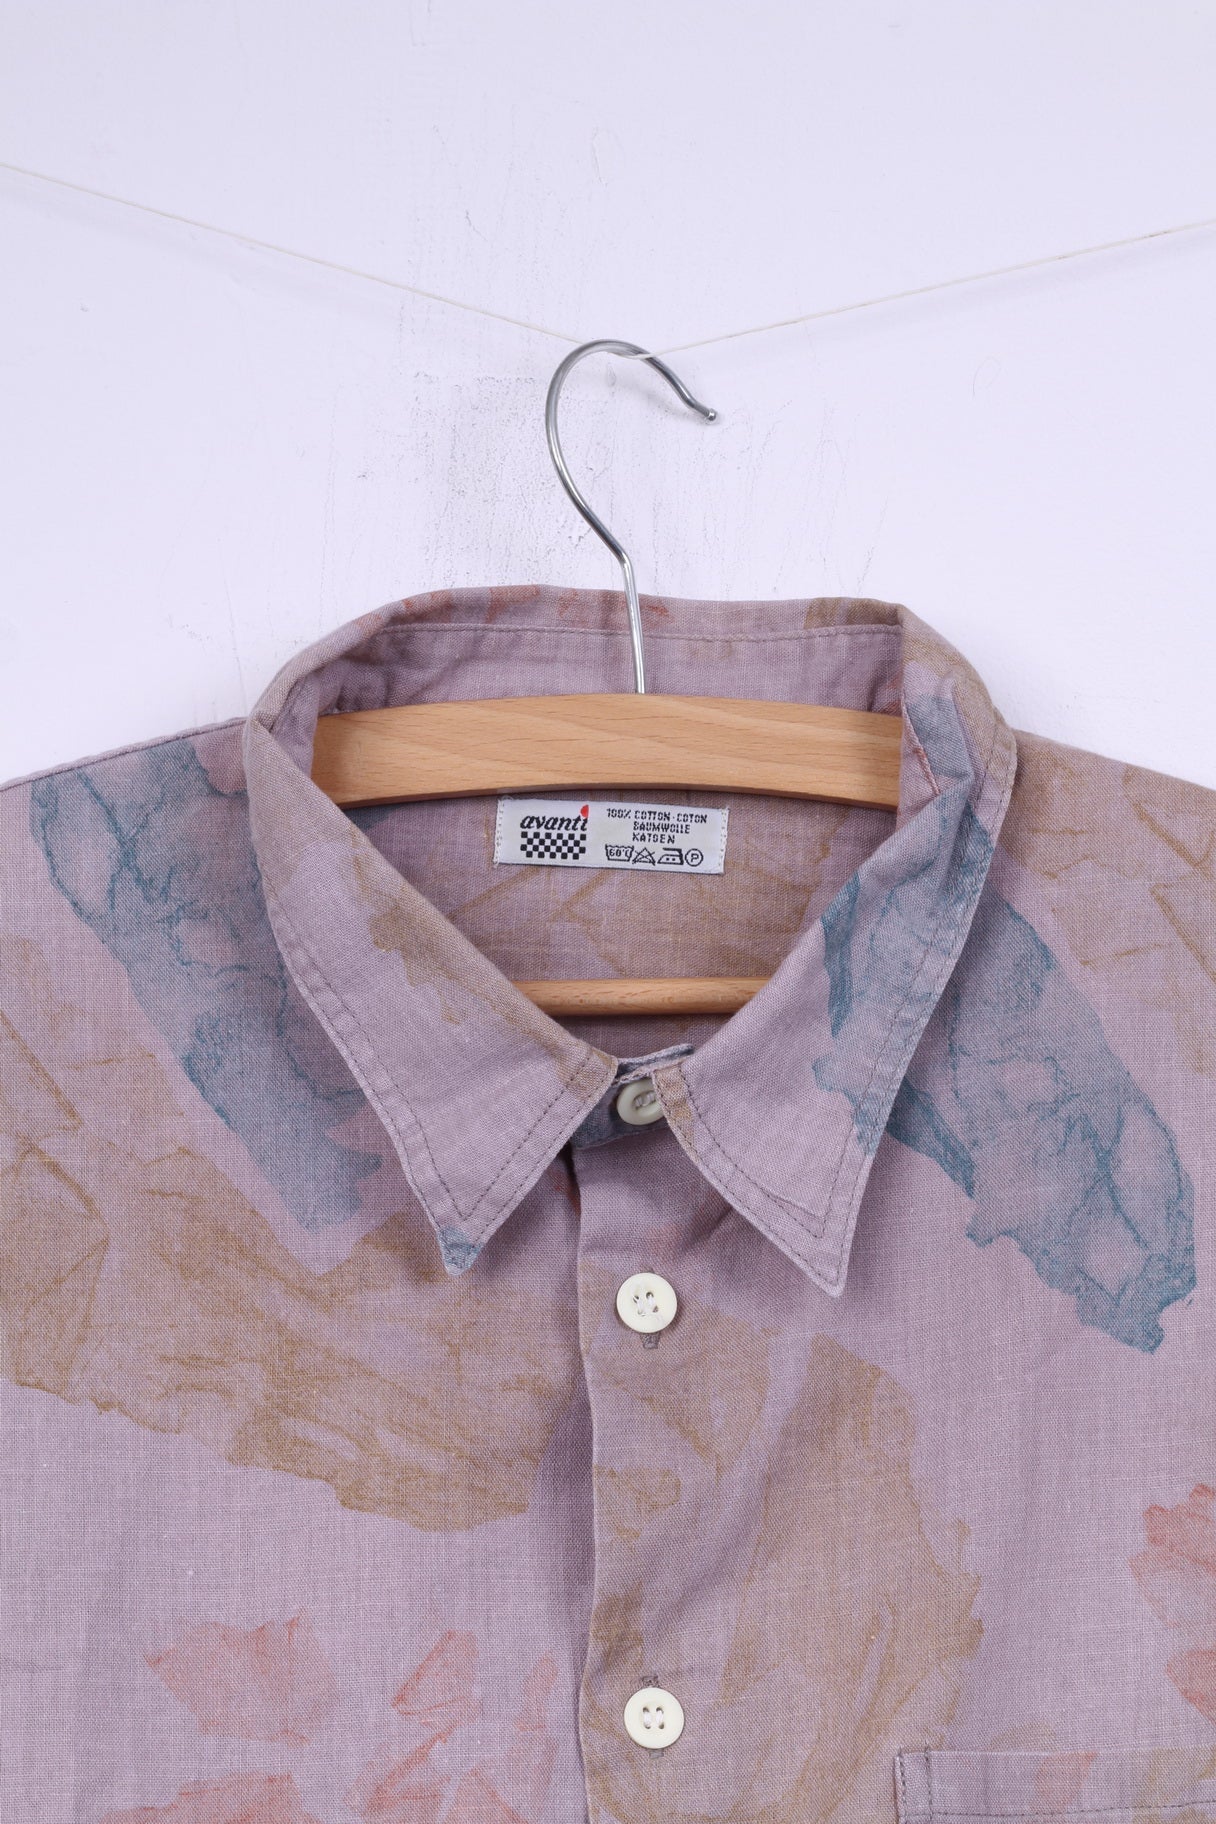 Avantt Men 41/42 XL Casual Shirt Violet Vintage Cotton Short Sleeve Top